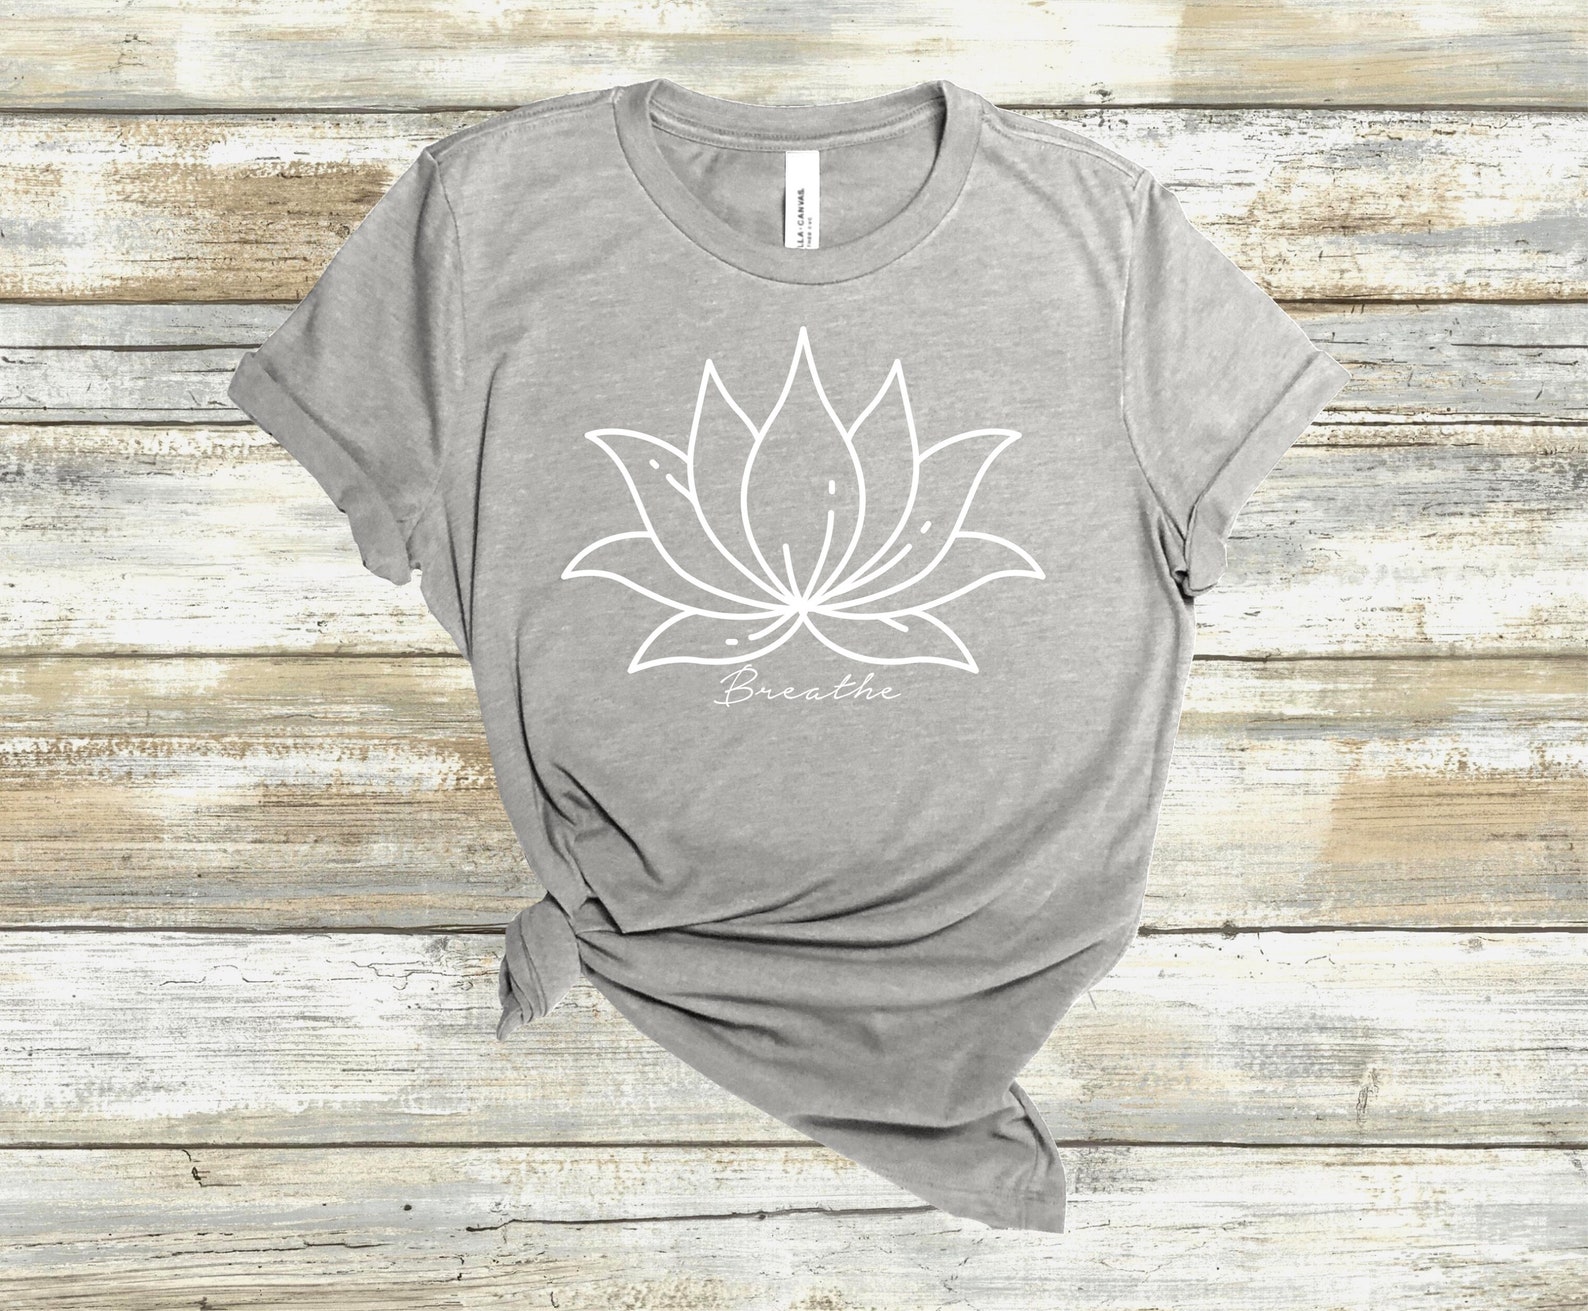 Lotus flower t-shirt breathe tshirt lotus shirt lotus | Etsy